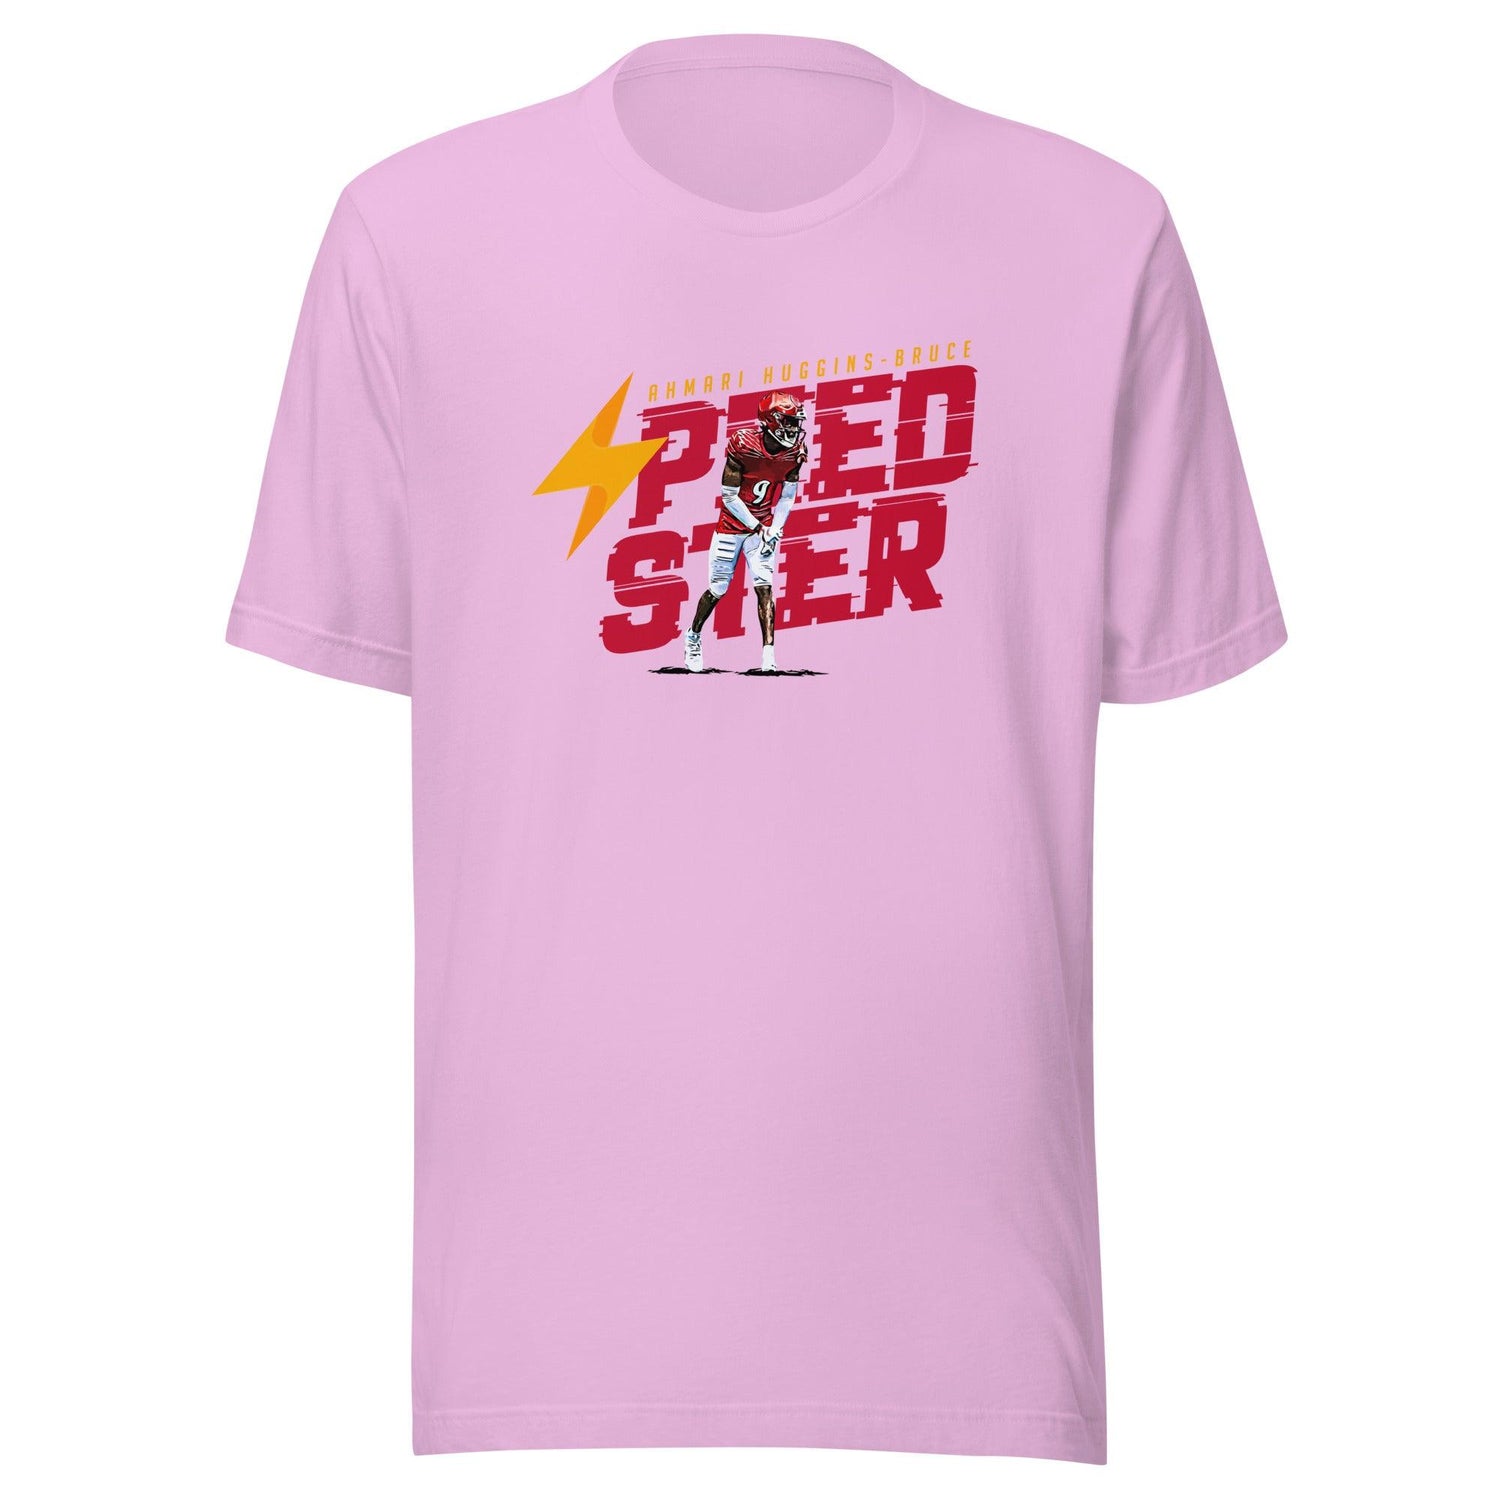 Ahmari Huggins "Speedster" T-Shirt - Fan Arch